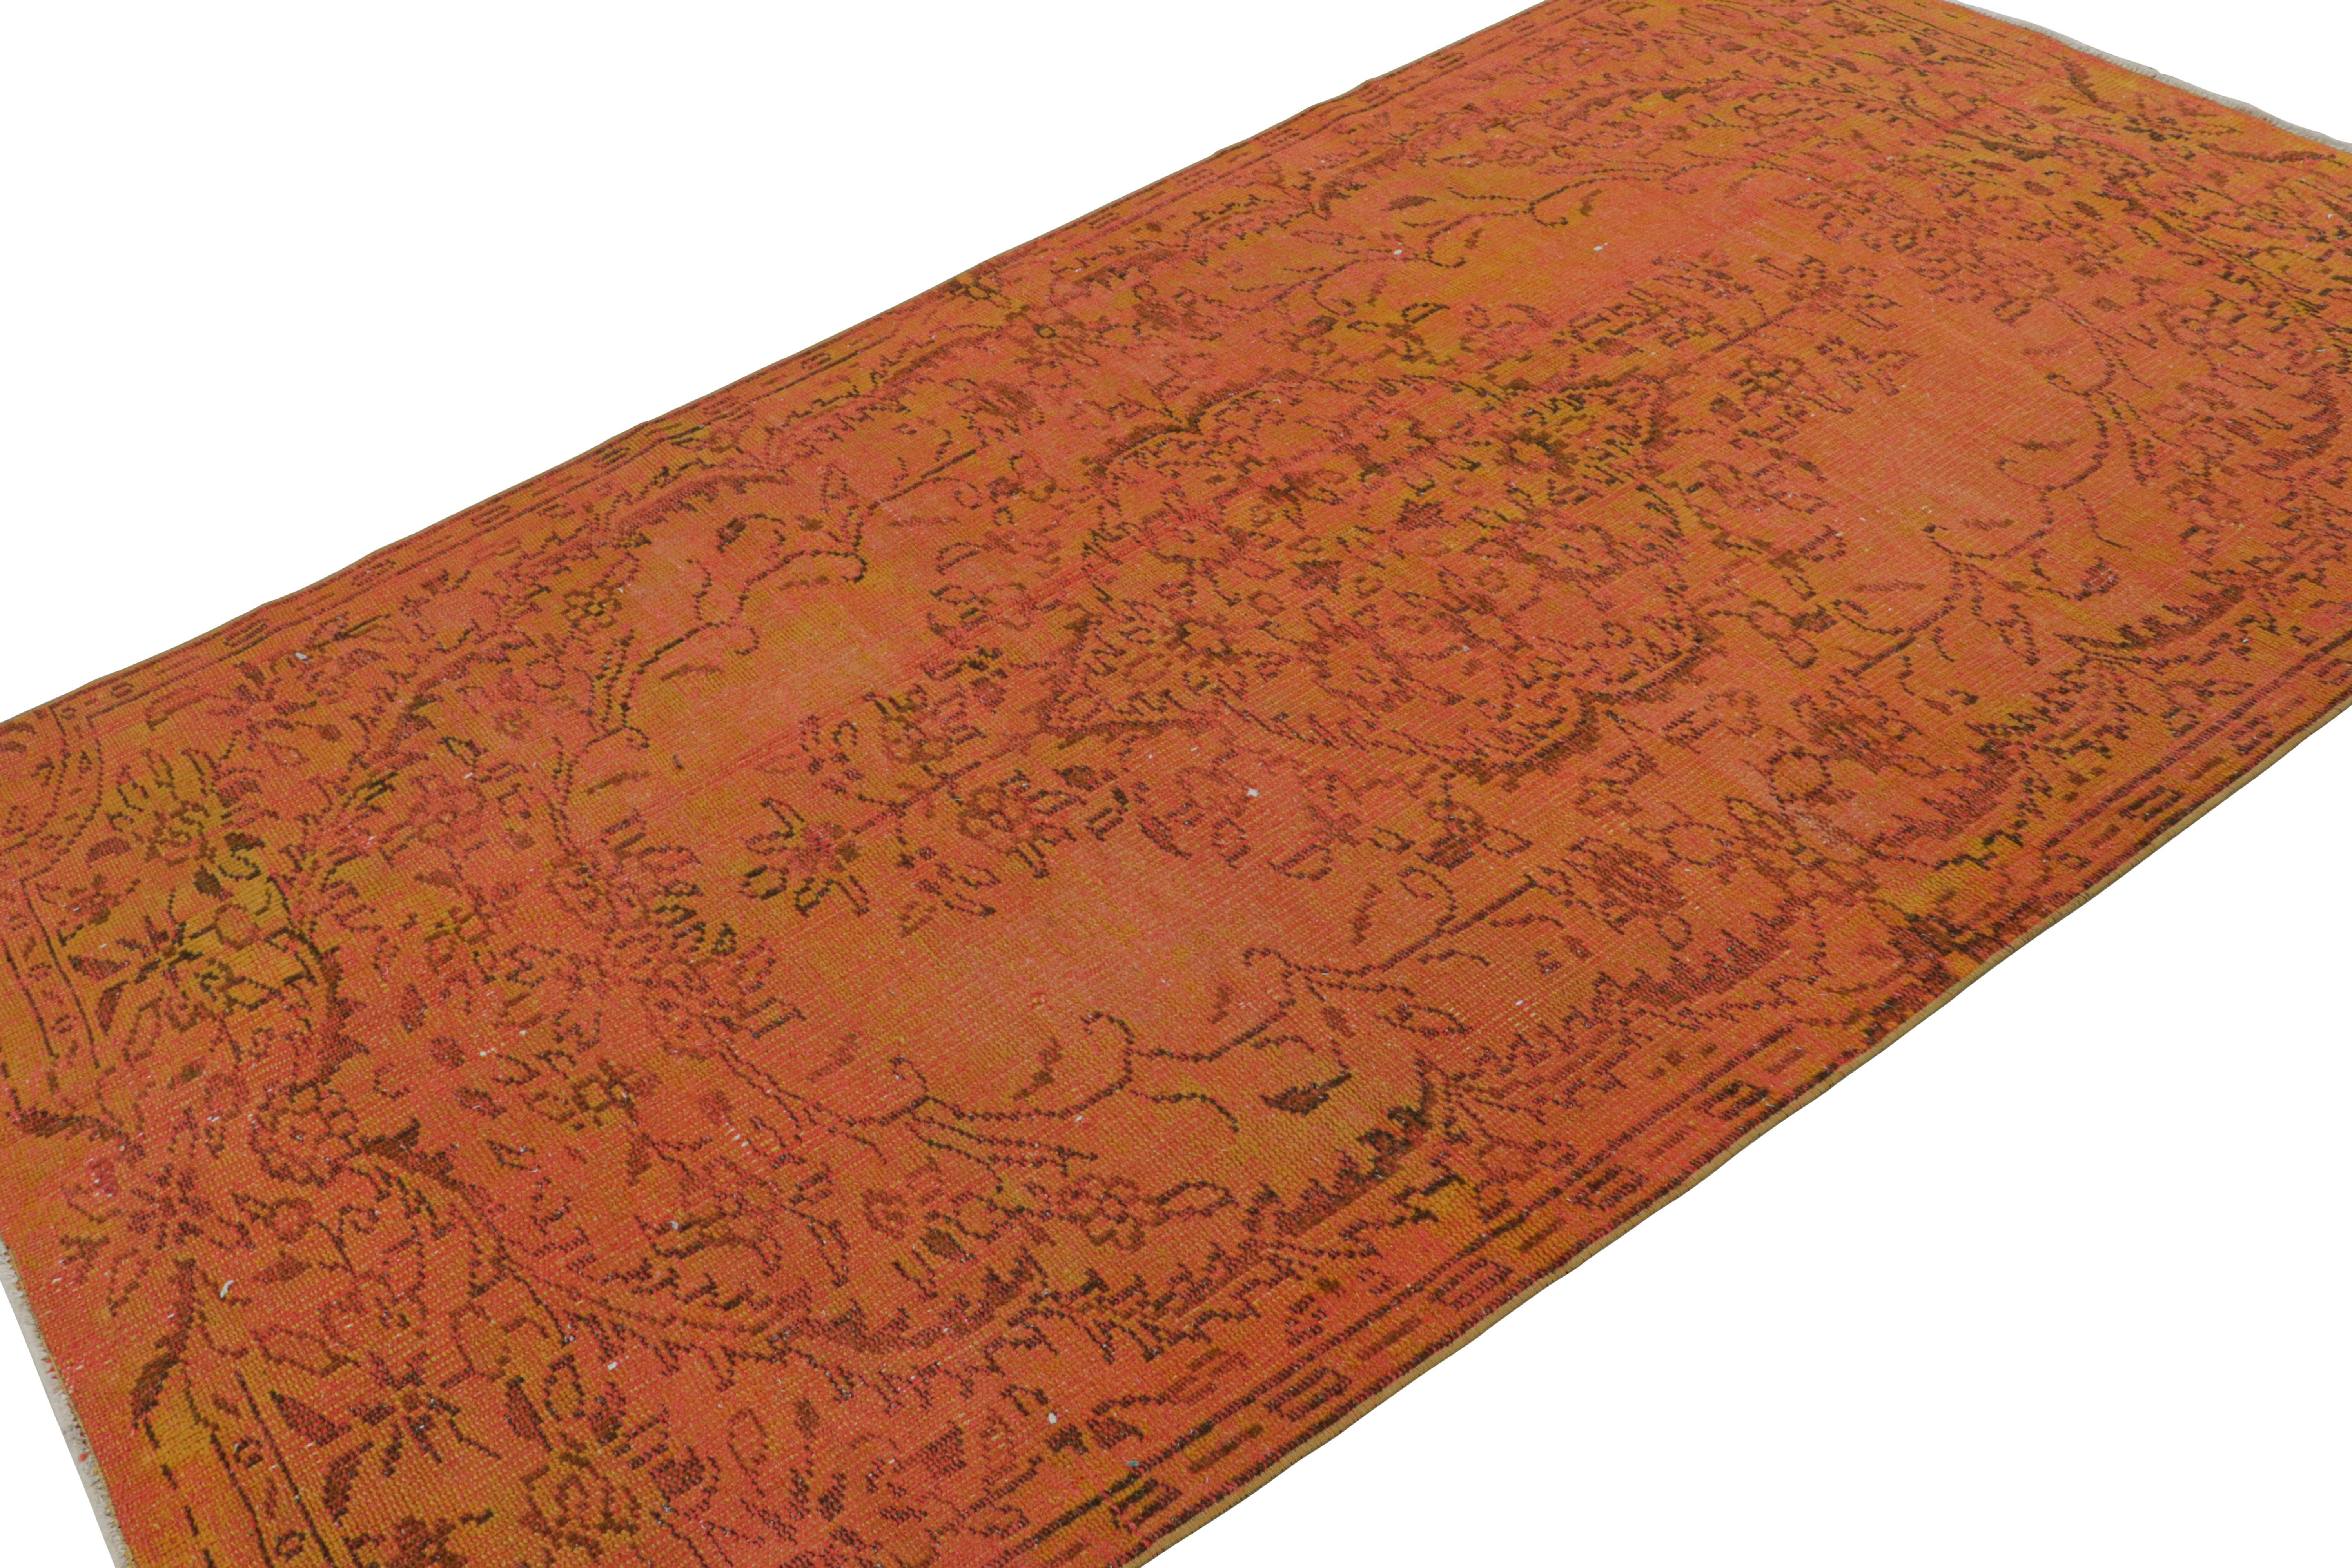 Noué à la main en laine vers 1960-1970, ce tapis turc vintage de 5x9 présente un jeu unique de sensibilités Art Deco et modernes du milieu du siècle pour l'époque. 

Sur le Design :

Les connaisseurs admireront le design de ce tapis turc vintage qui